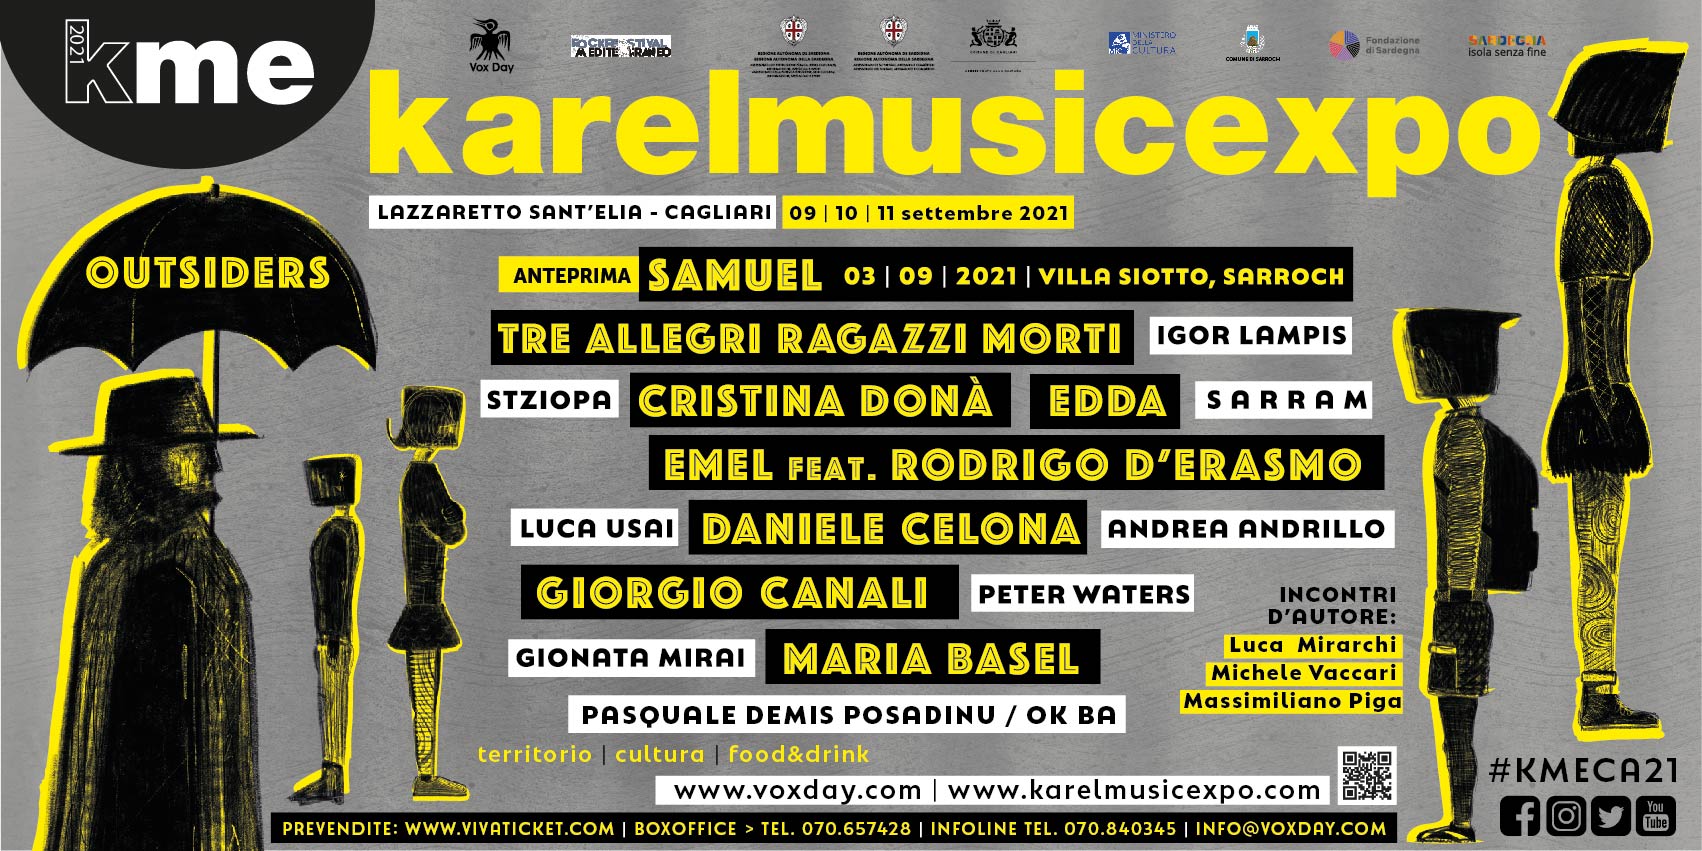 KAREL MUSIC EXPO: Dal 9 all'11 settembre torna a Cagliari il Festival delle culture resistenti. Il programma completo della 15^ edizione